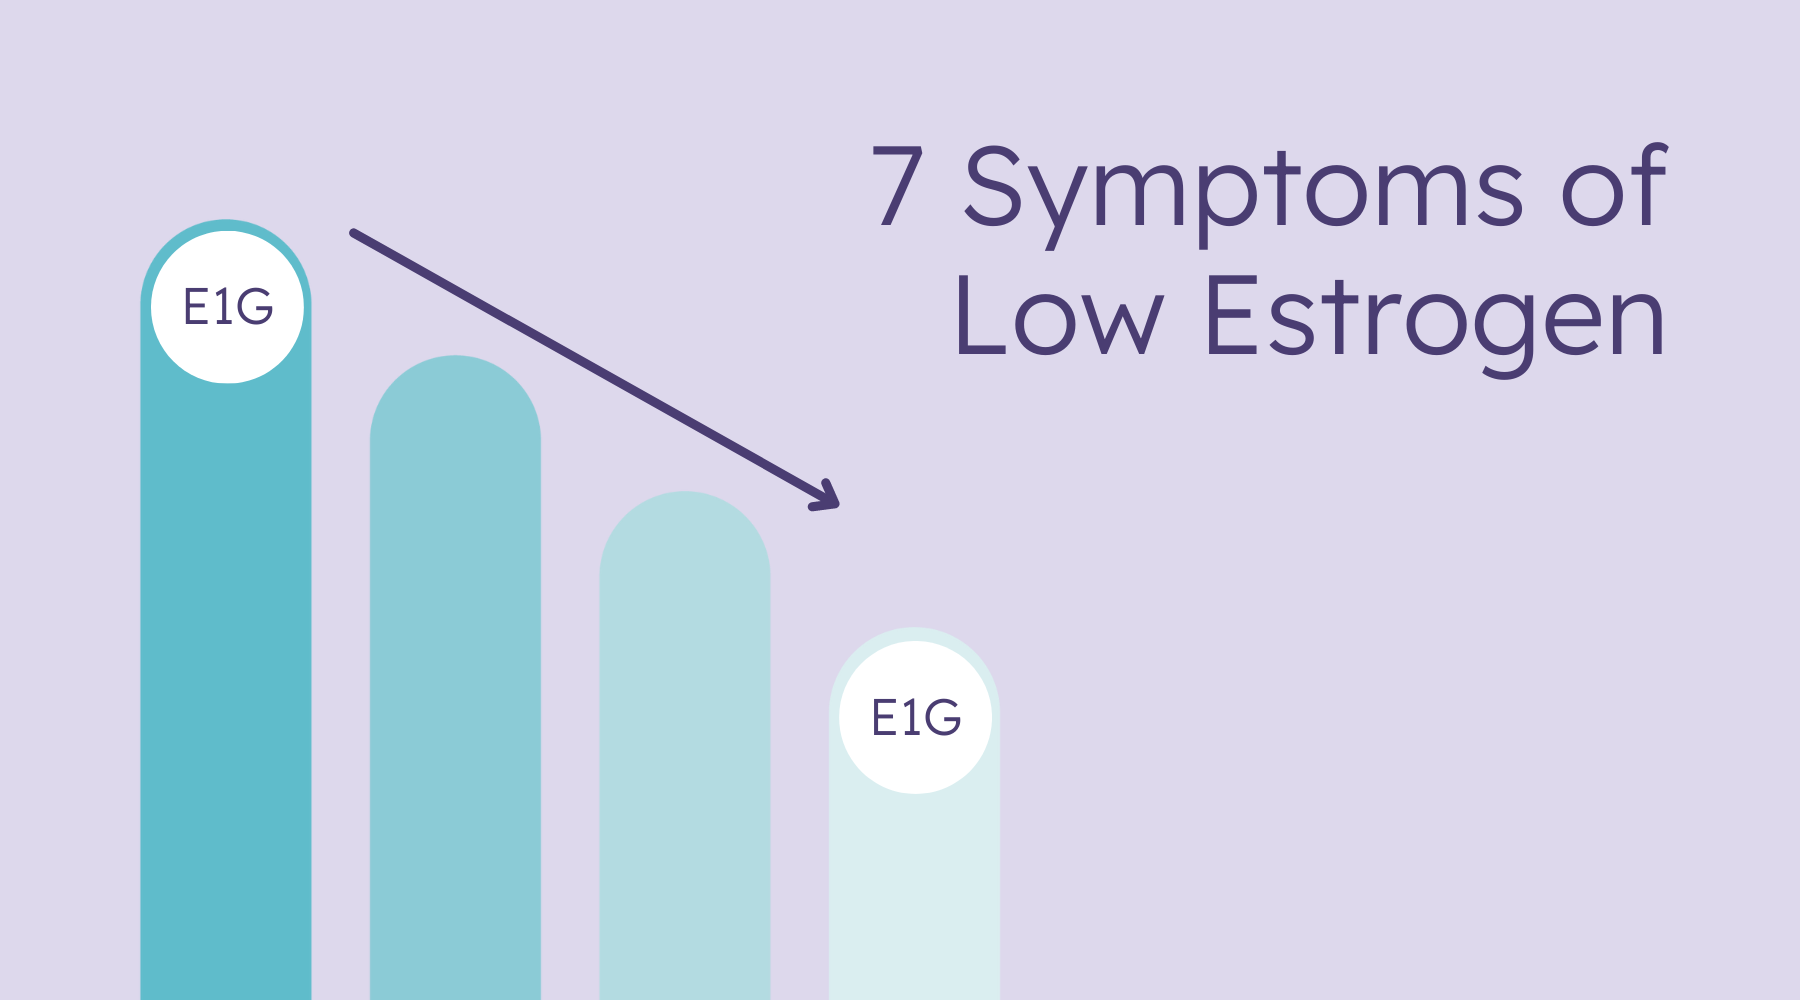 7 symptoms of low estrogen